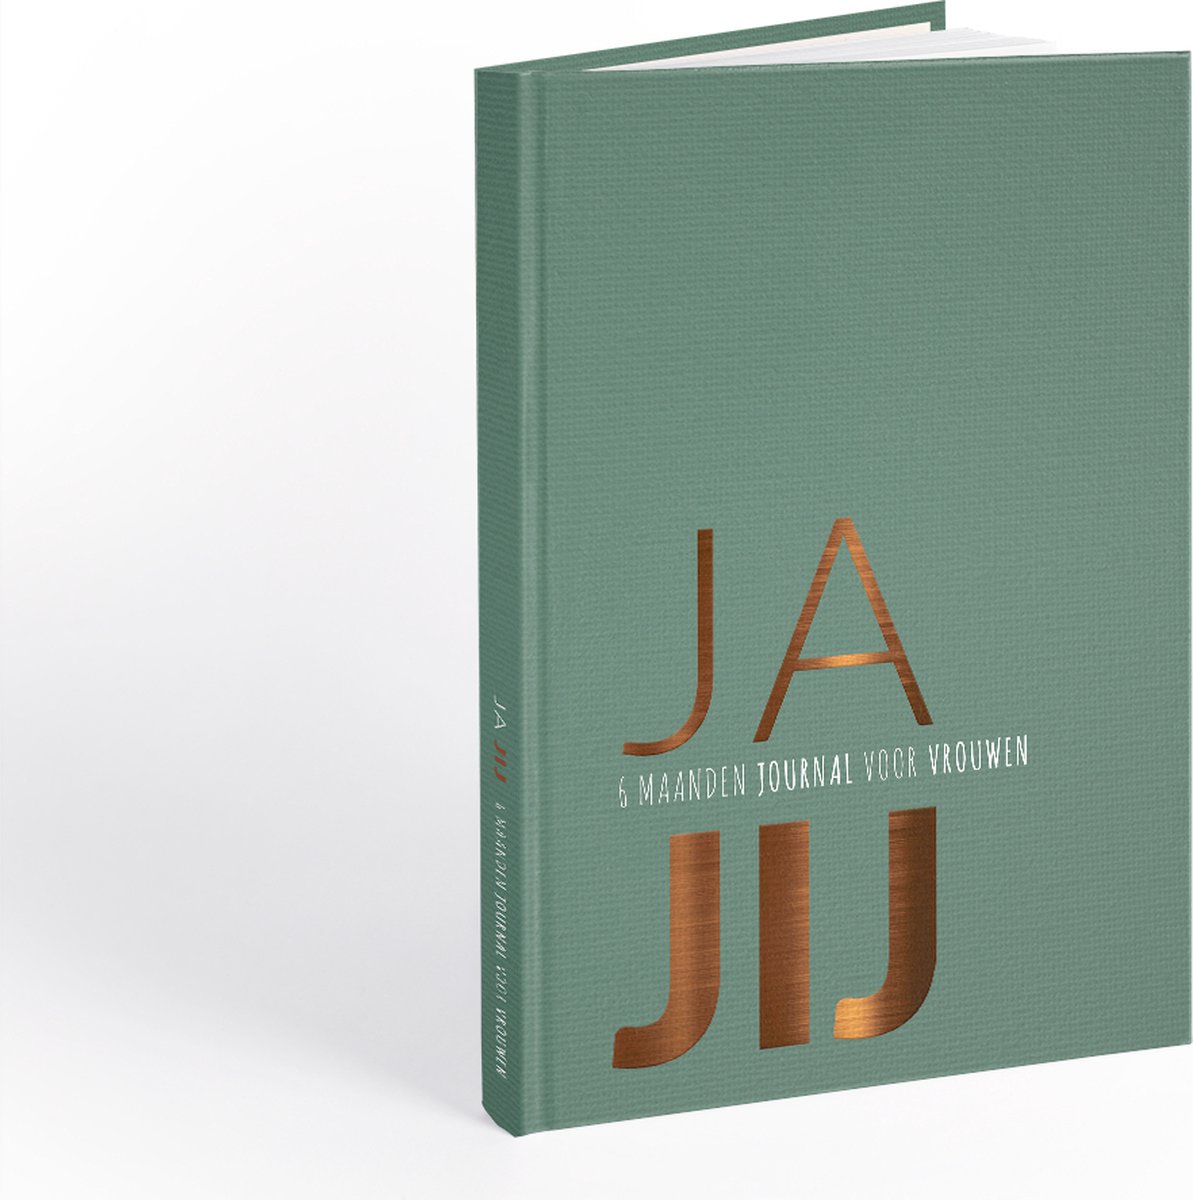 JA JIJ Journal Groen - Invuldagboek/Journals - 6 maanden invuldagboek voor vrouwen - zelfontwikkeling & doelen stellen - Nina van Arum